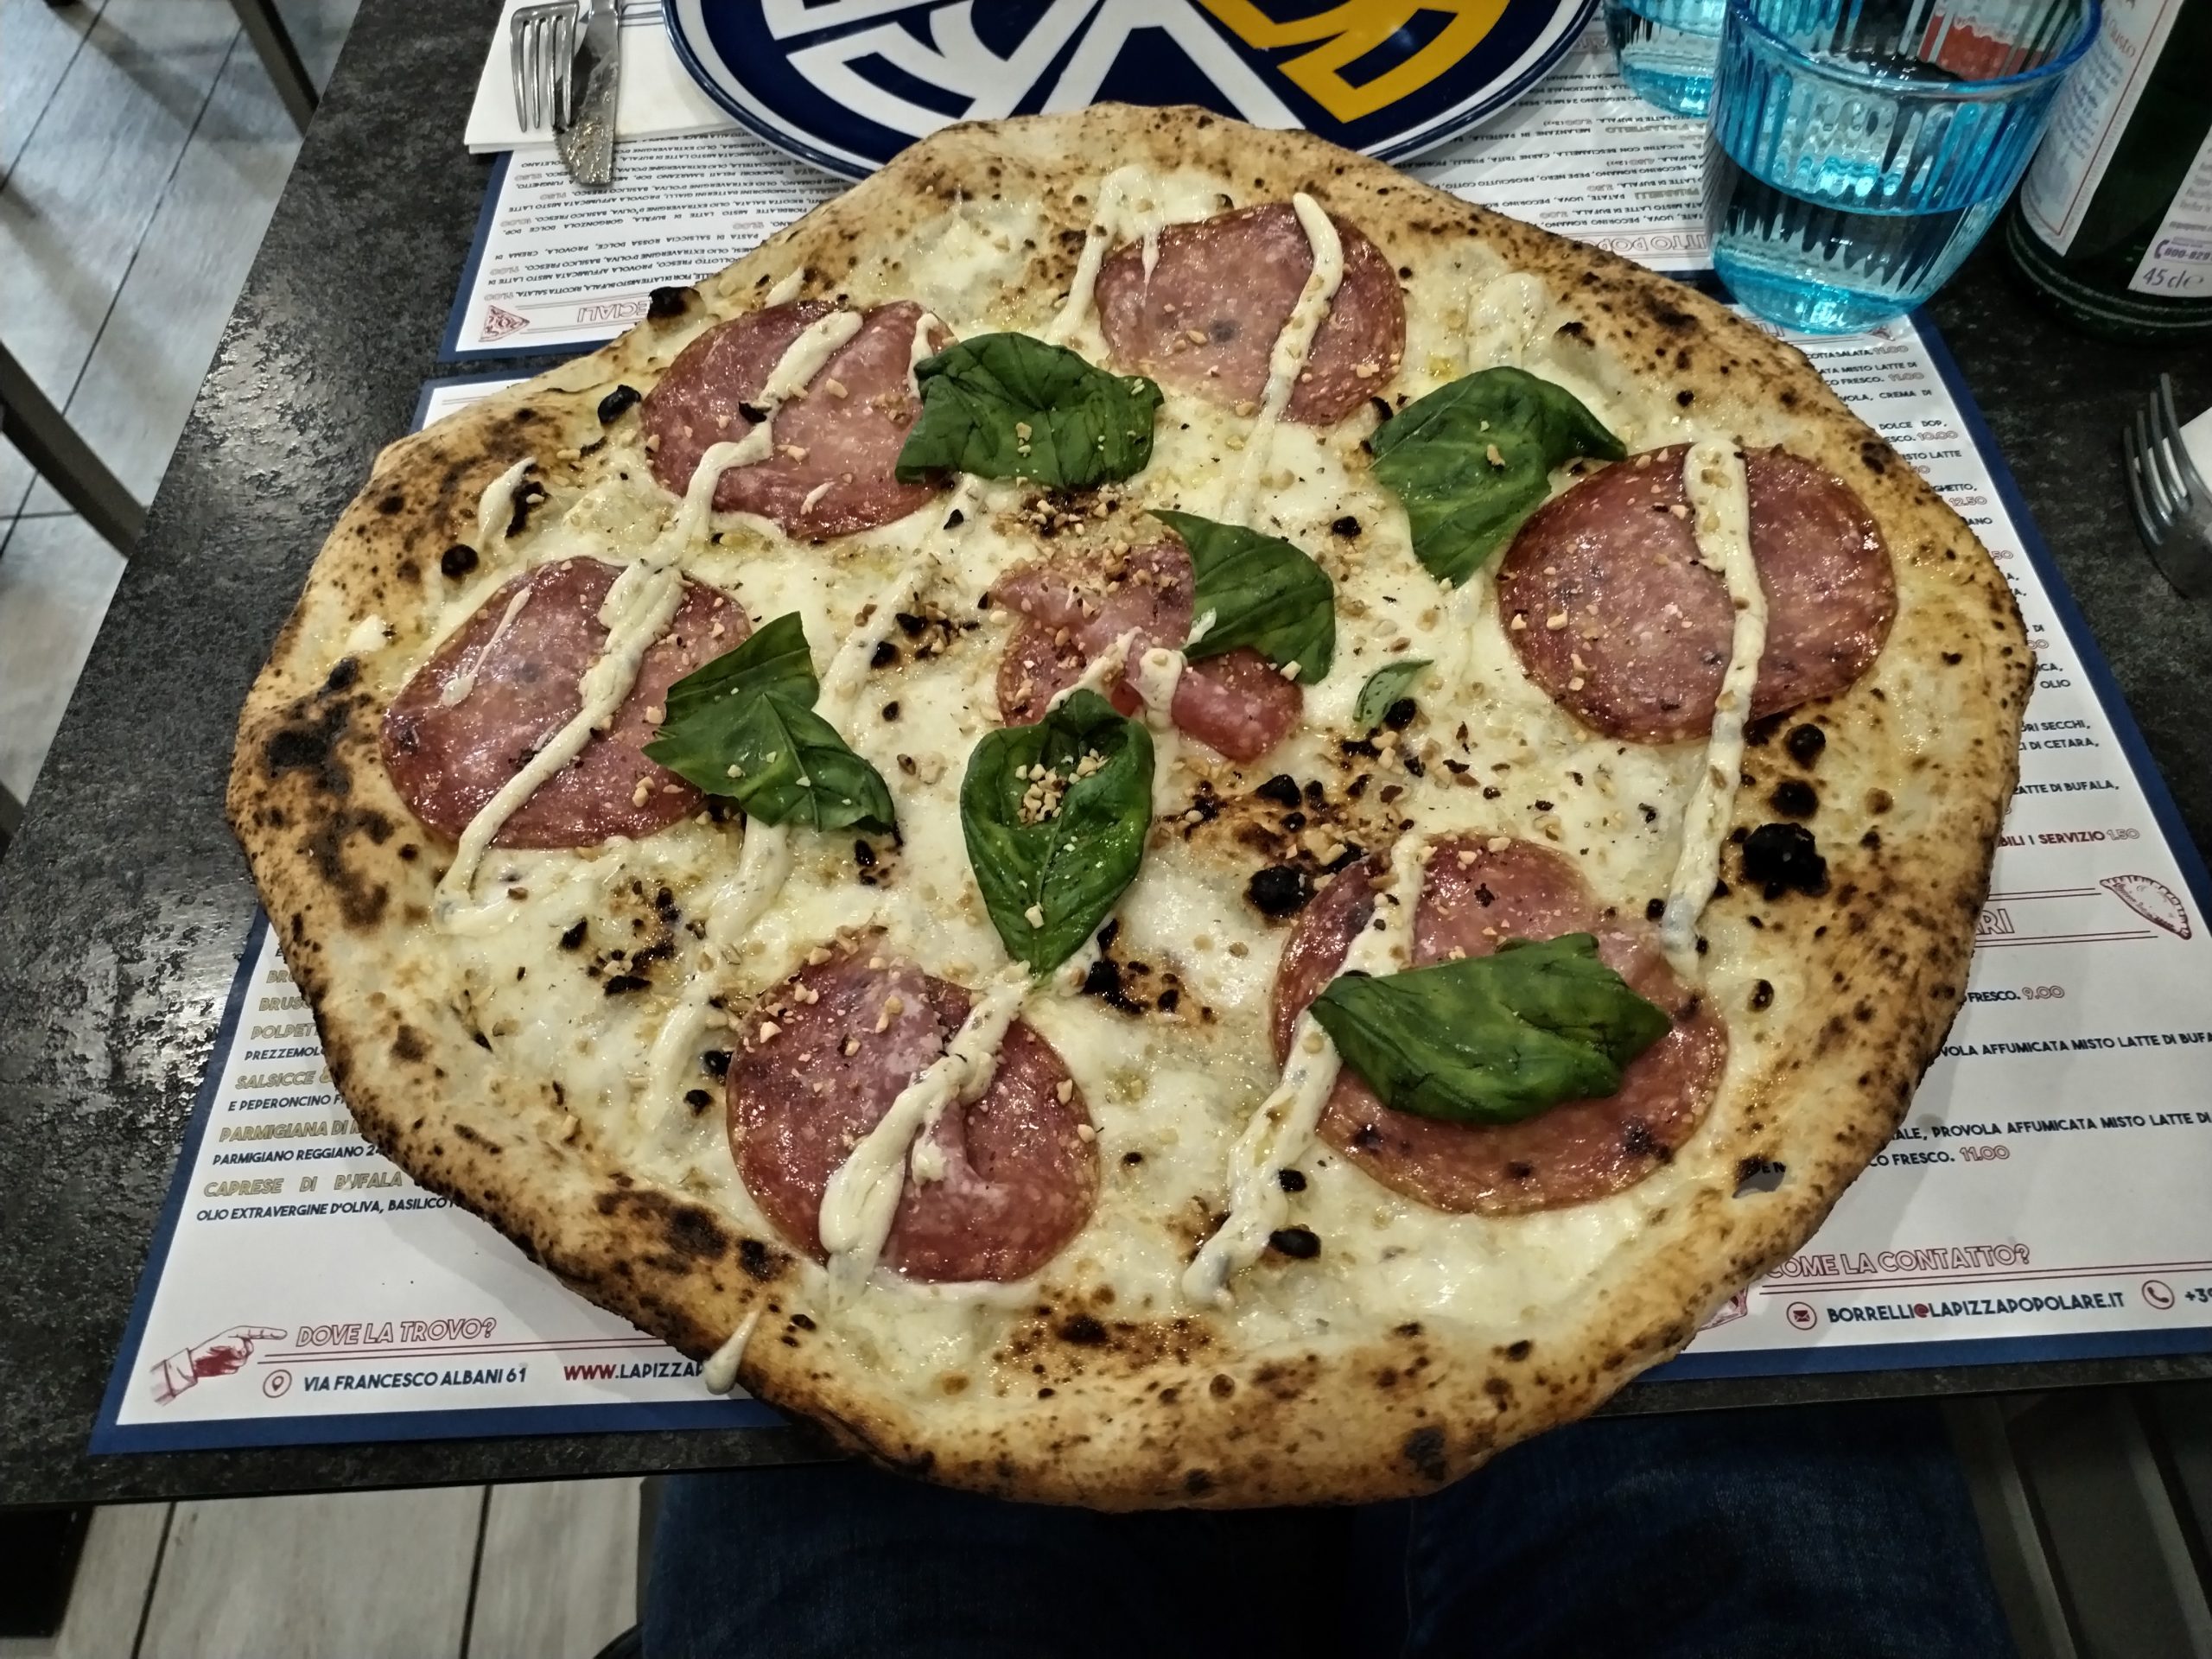 fior di latte,i salame tipo Milano, scaglie di nocciola e crema di gorgonzola (La Pizza Popolare)